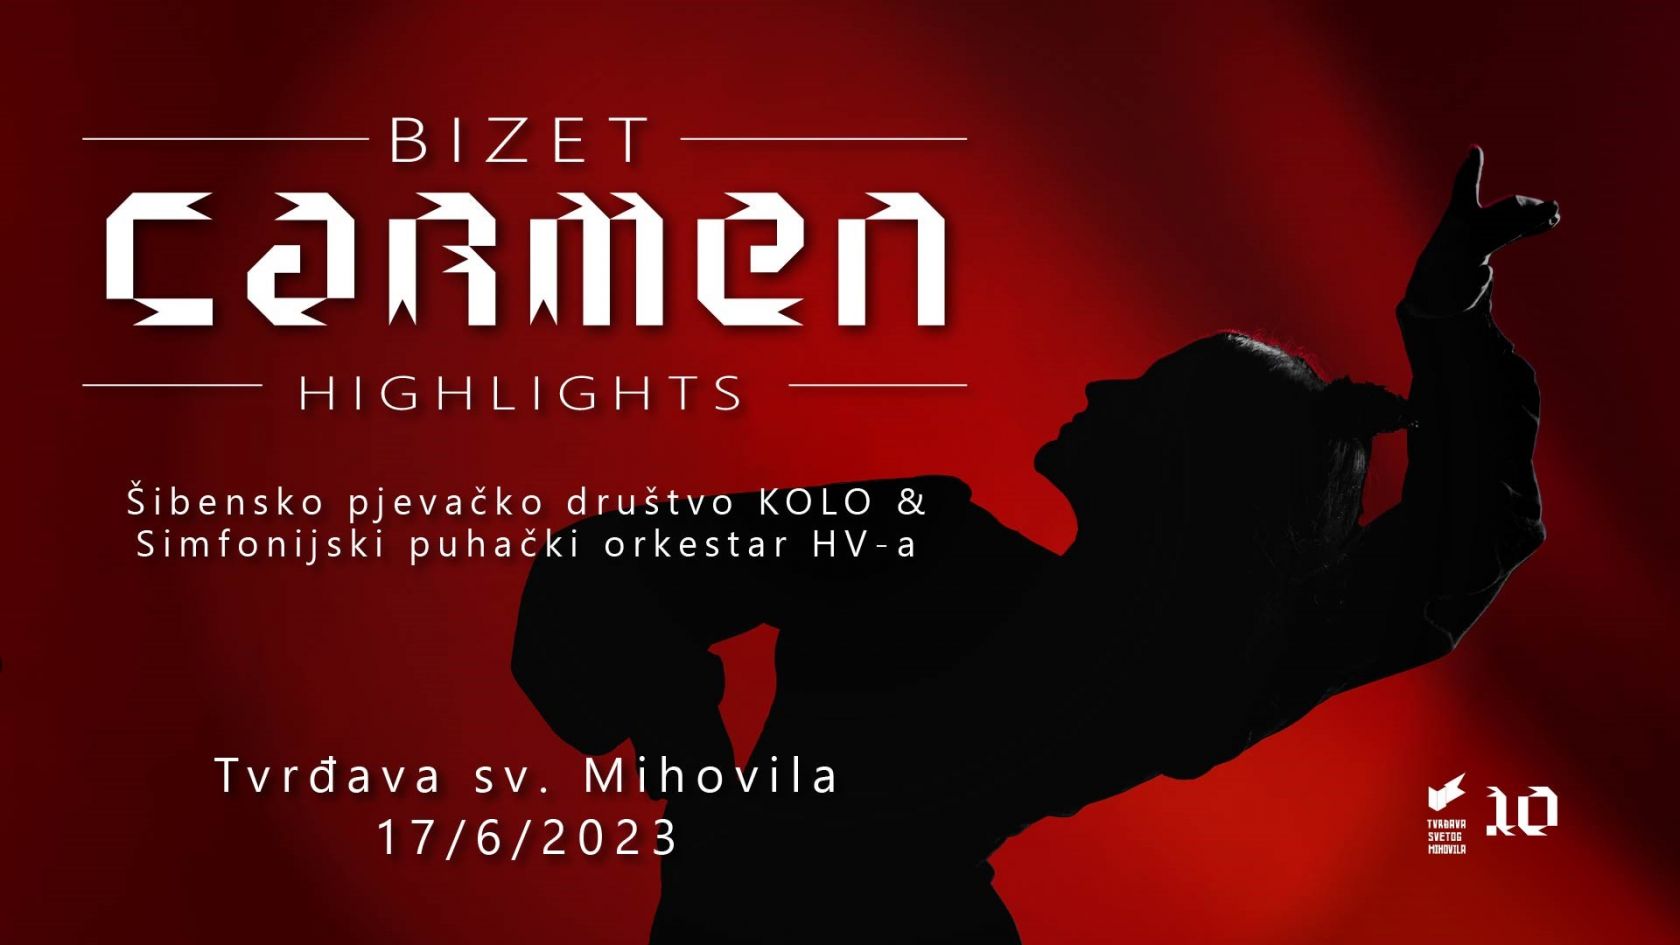 Najbolje od Bizetove Carmen u izvedbi Kola i Orkestra HV-a  na Mihovilu